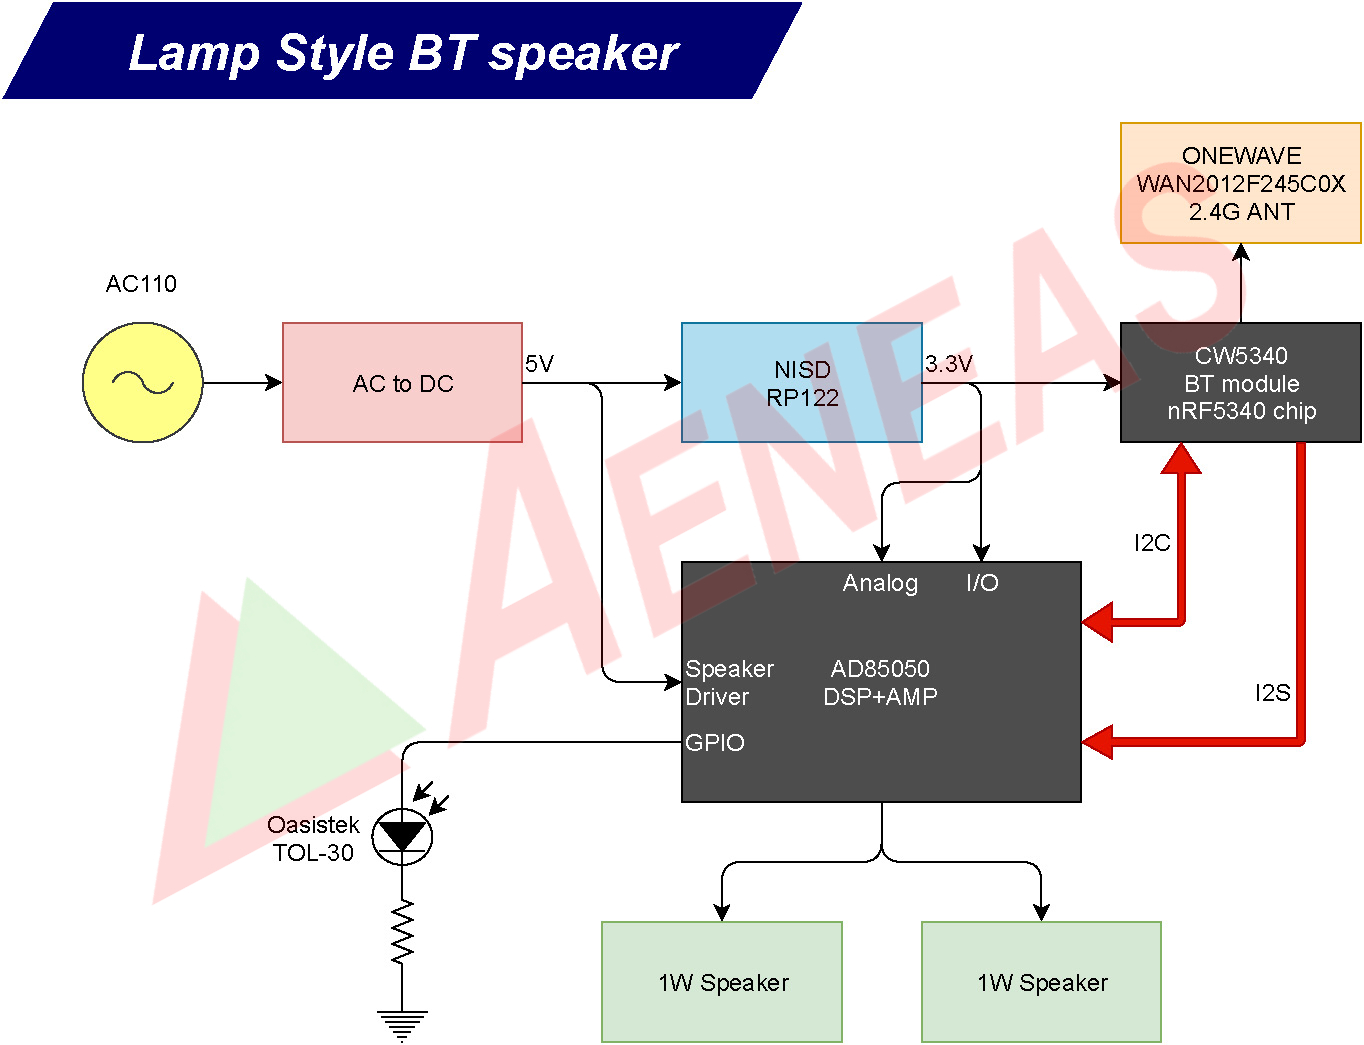 Application Block for Lamp Style BT Speaker